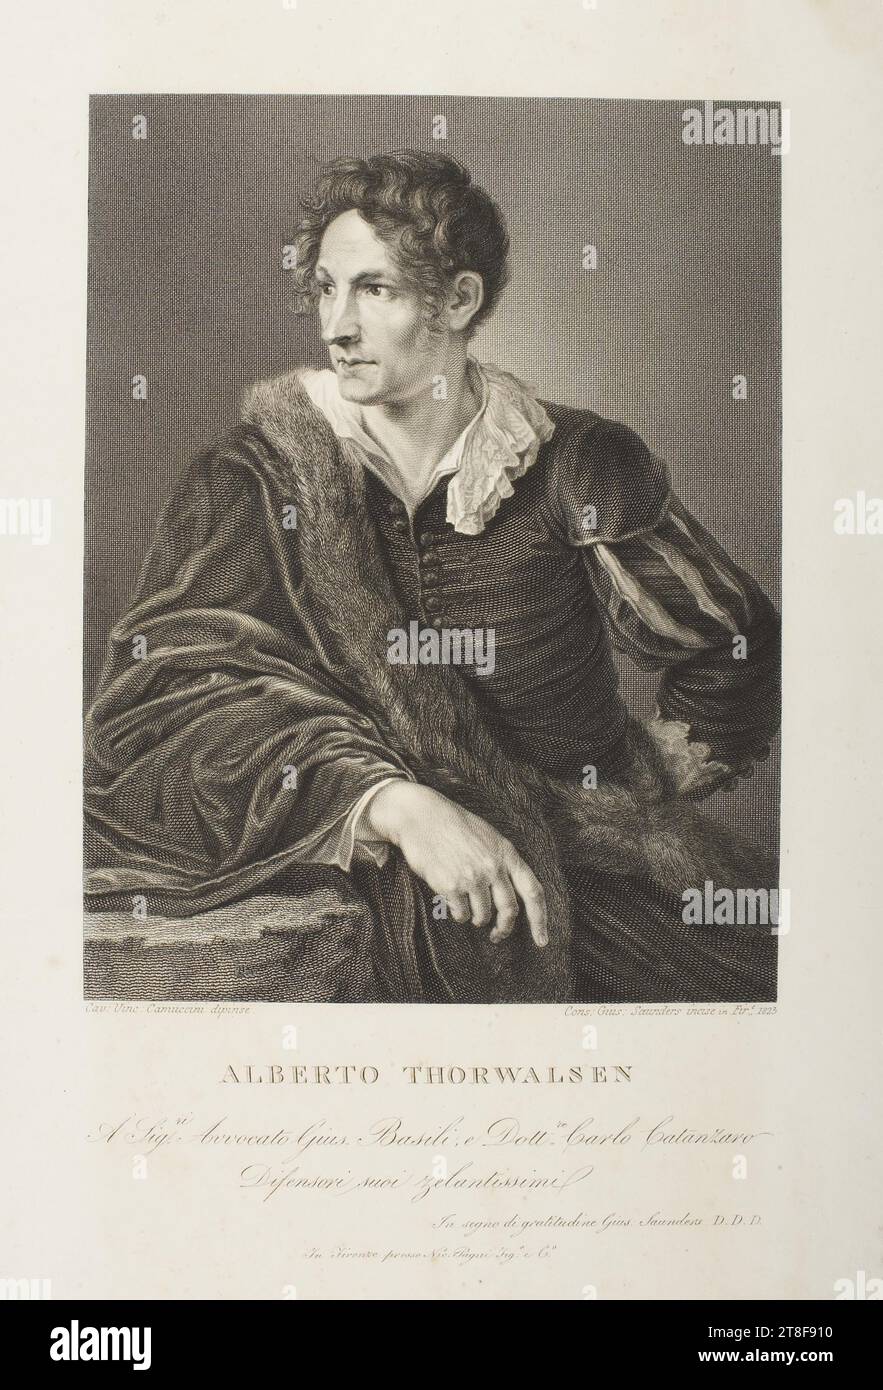 Ritratto di Thorvaldsen, Joseph Saunders, 1773-1845, 1823, grafica, incisione del rame, carta, colore, inchiostro per stampante, incisione in rame, Printet, altezza (dimensioni piastra) 310 mm, altezza (formato carta) 312 mm, larghezza (formato piastra) 220 mm, larghezza (formato carta) 235 mm, Cav: Vinc: Camuccini dipense. Contro: GIUS: Saunders incisi in Fire., 1823, ALBERTO THORWALDSEN, A. Sig.ri avvocato GUIs. Basili, e Dolt.re Carlo Catanzaro, difensori suoi zelantissimi, in segno di gratidudine Gius: Saunders D.D.D., a Firenze presso NIC. Pagni Sig.o e G.o, Graphic Design, European Foto Stock